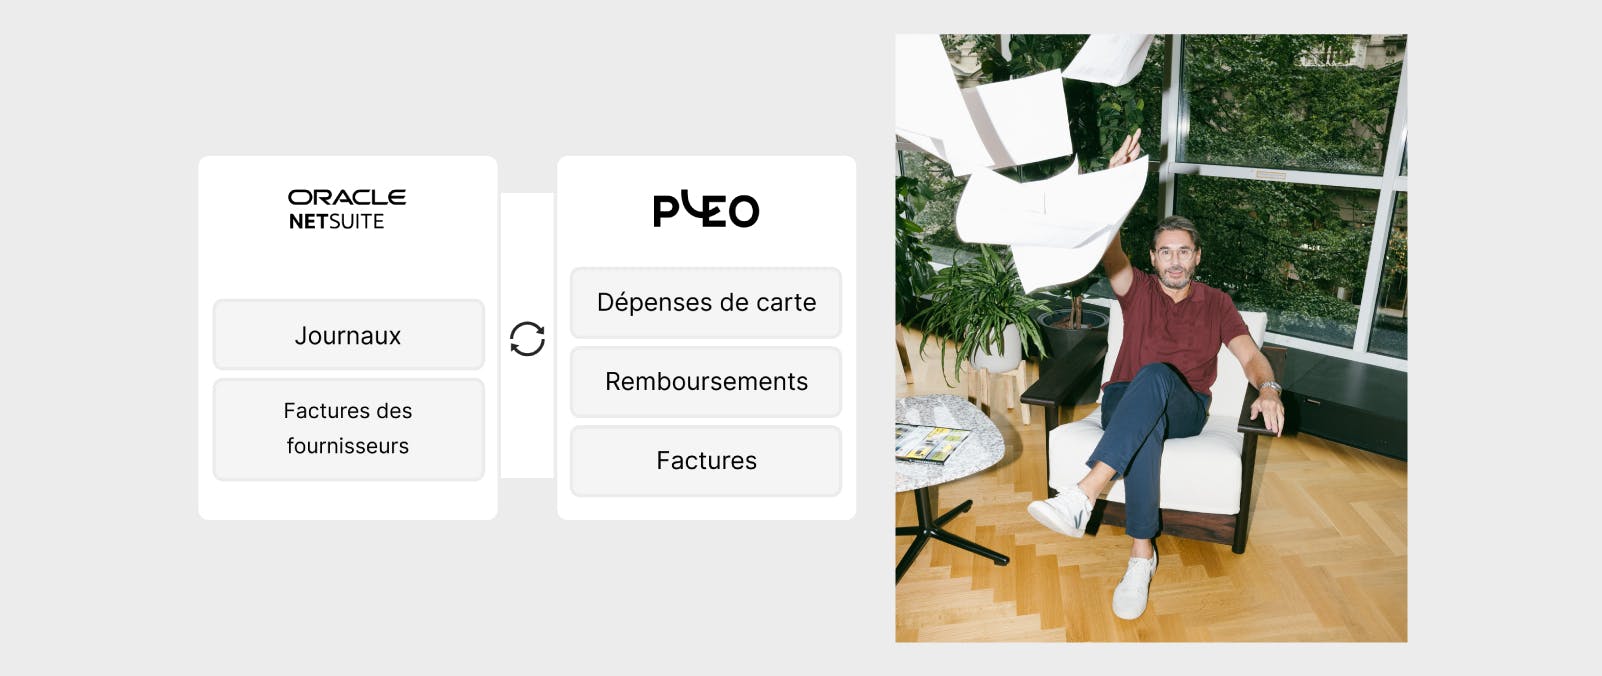 Automatisez vos processus grâce à NetSuite et Pleo